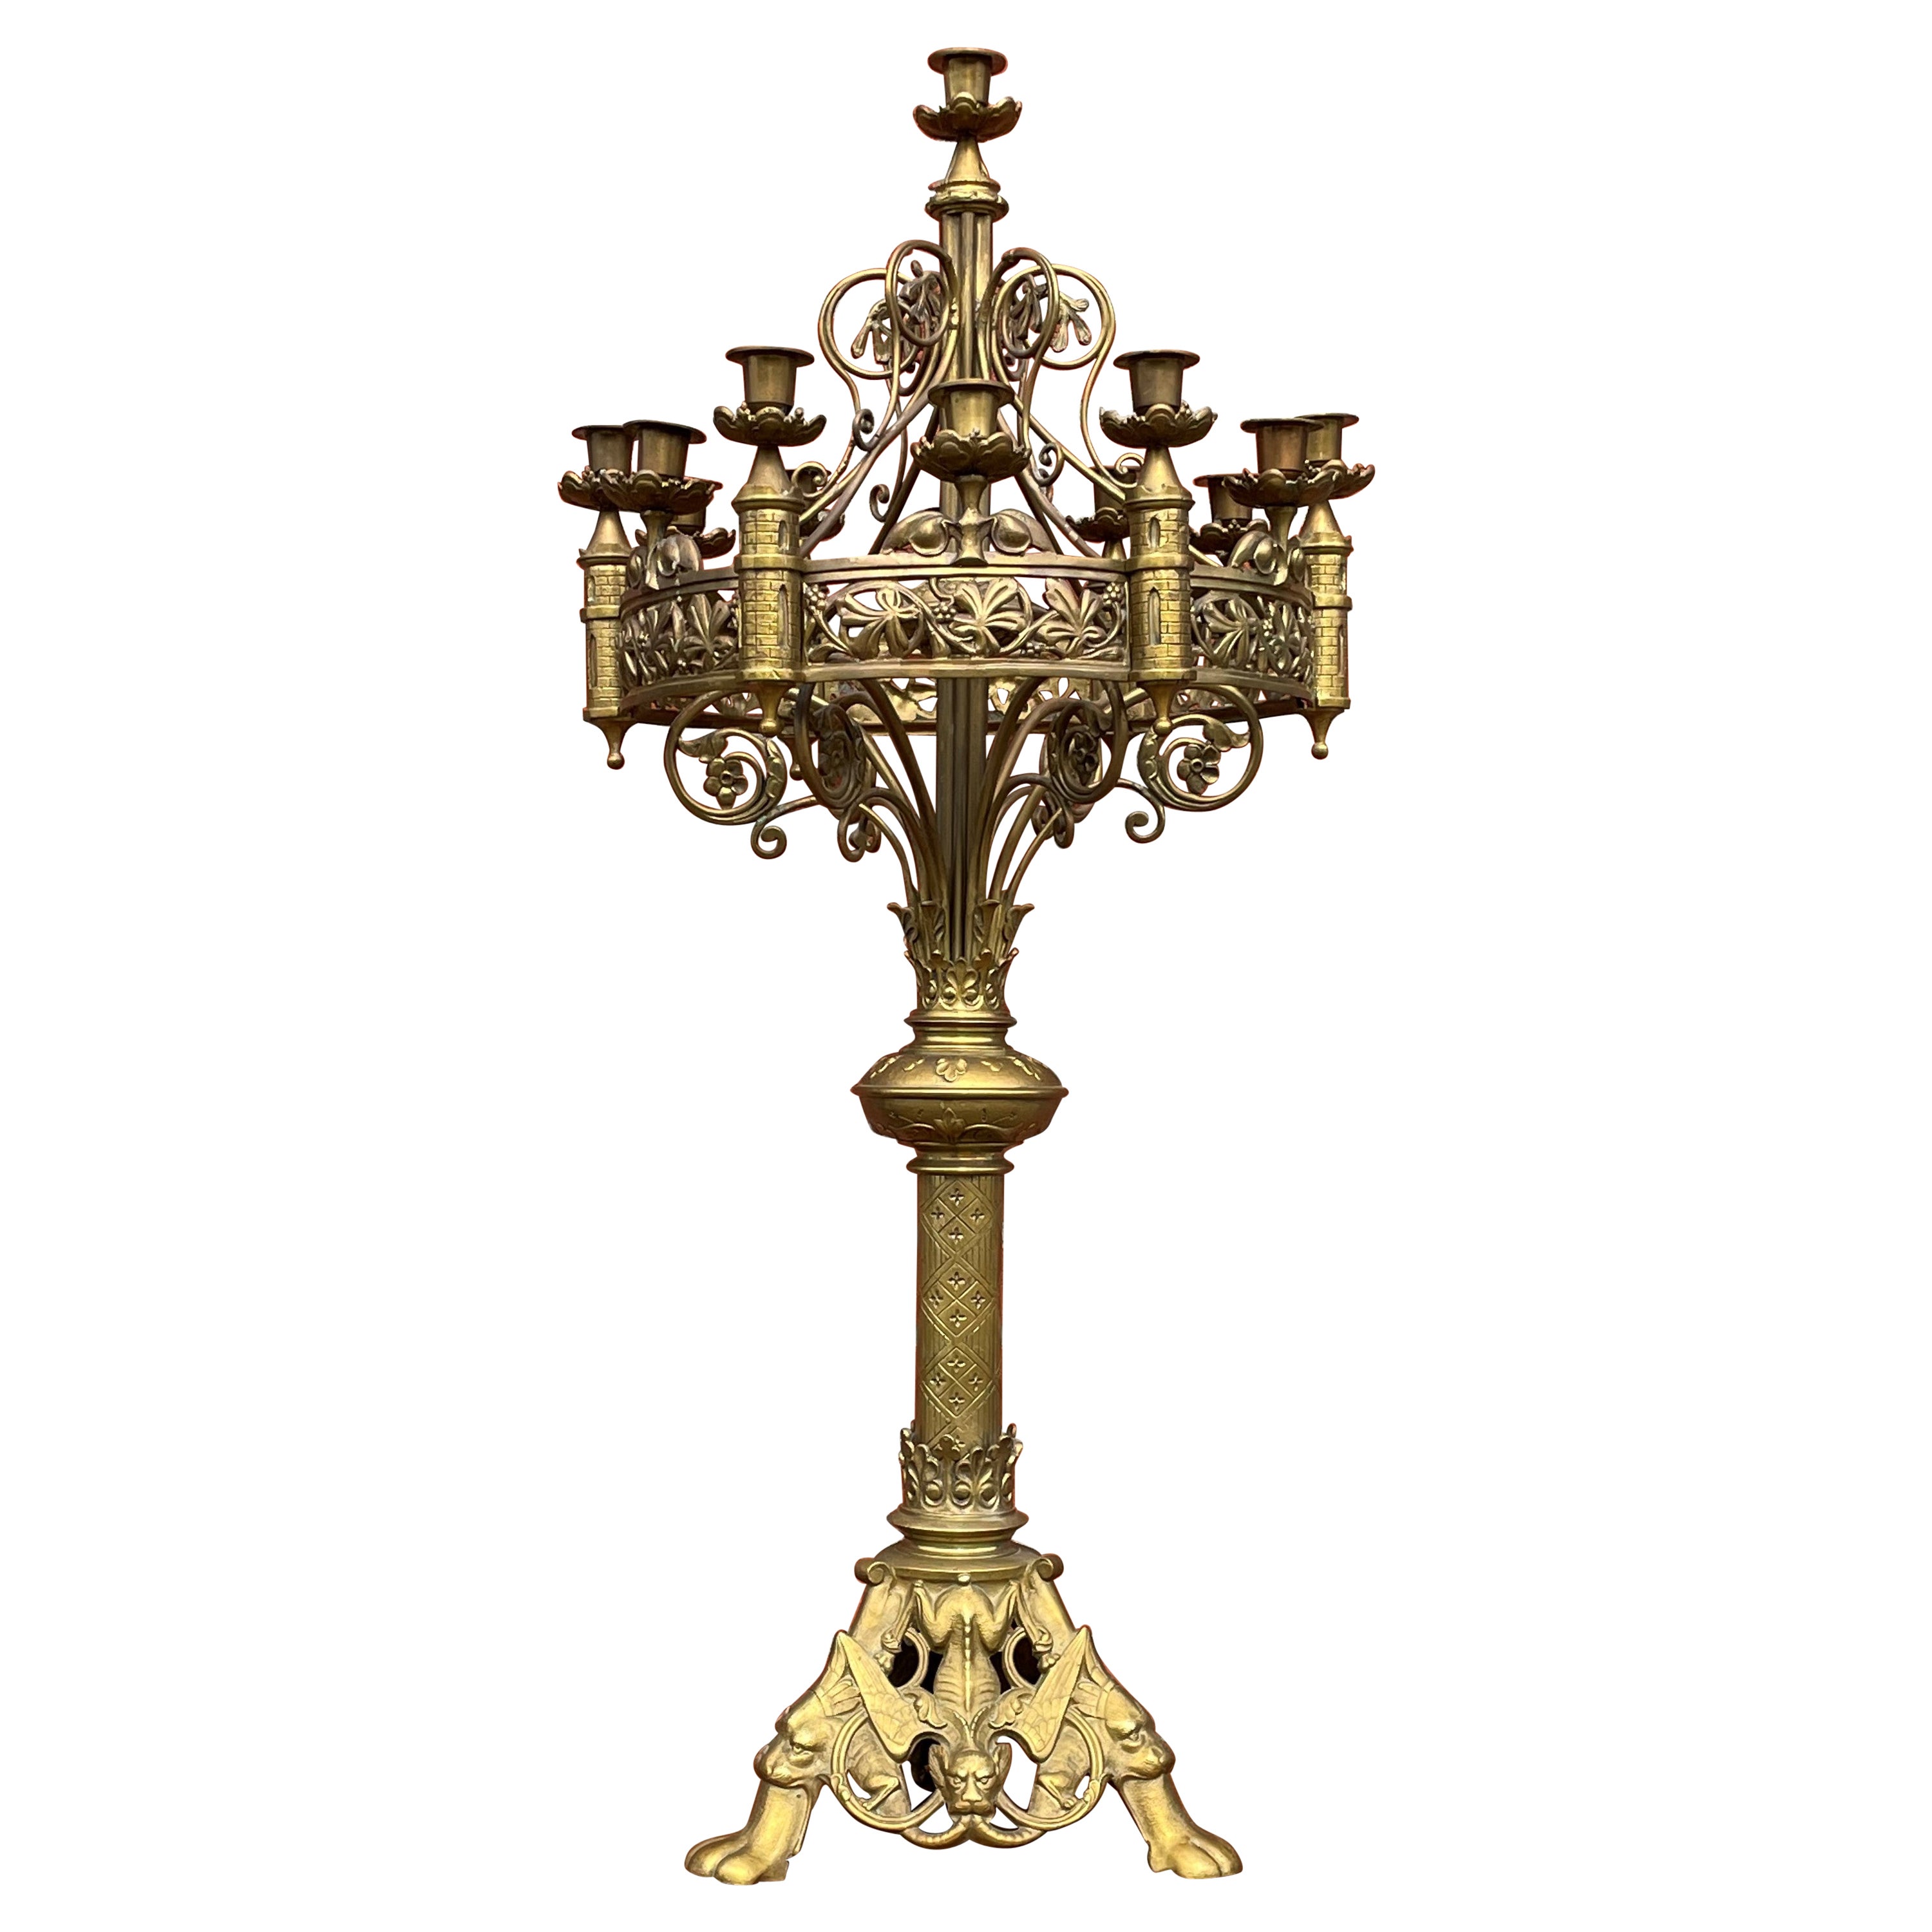 Ancien candélabre de table ou de sol néo-gothique en bronze de style néo-gothique, 13 bougies avec gregoyles